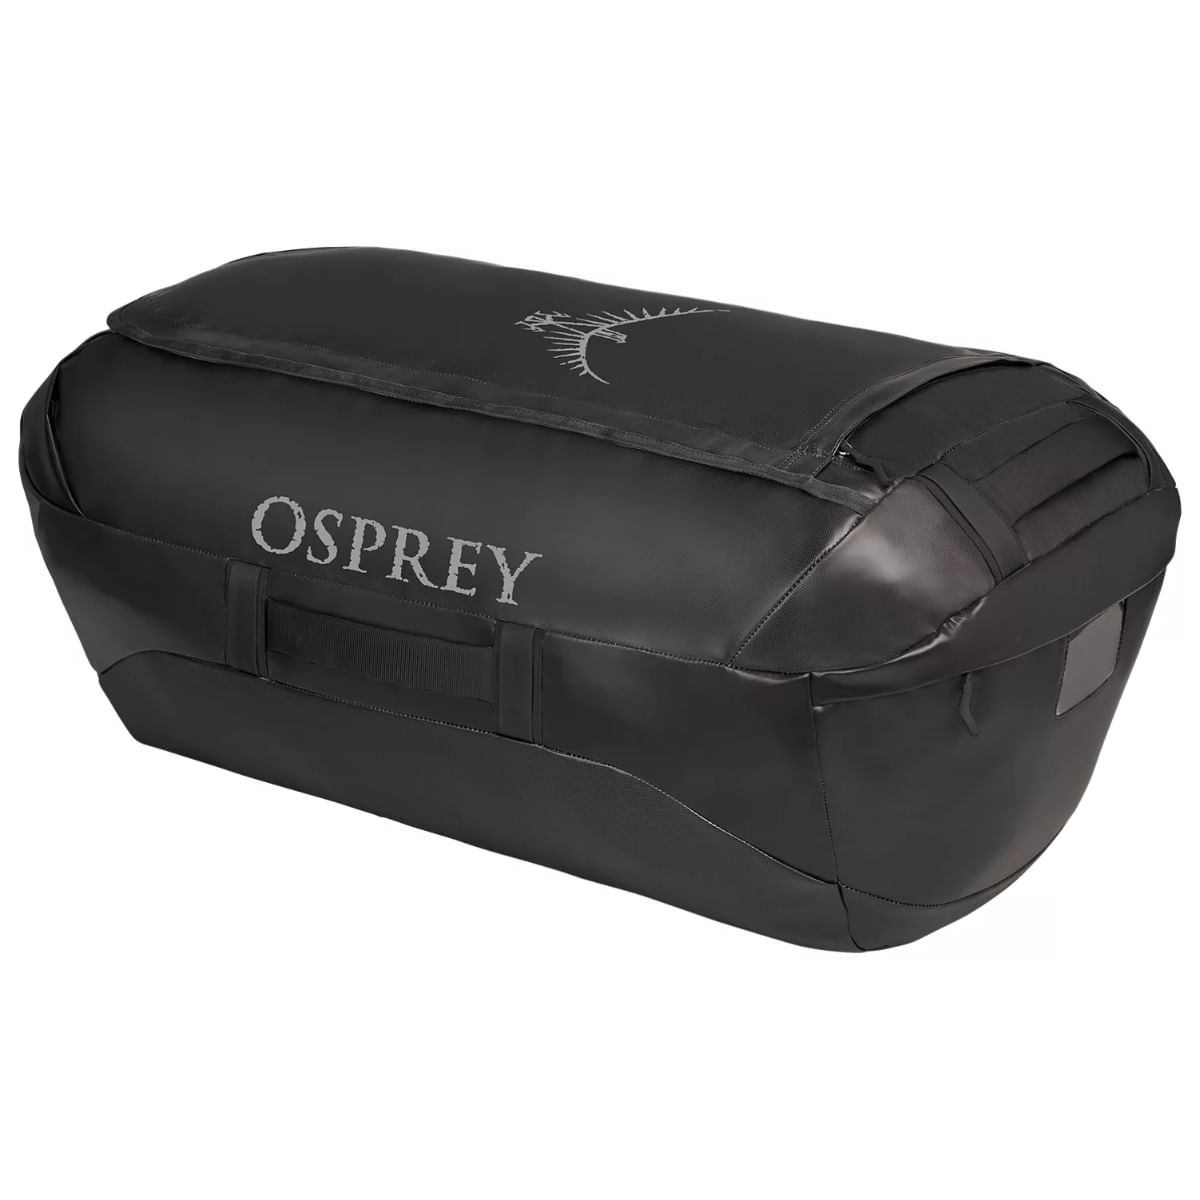 Osprey Transporter 120L Duffel Bag - Als.com